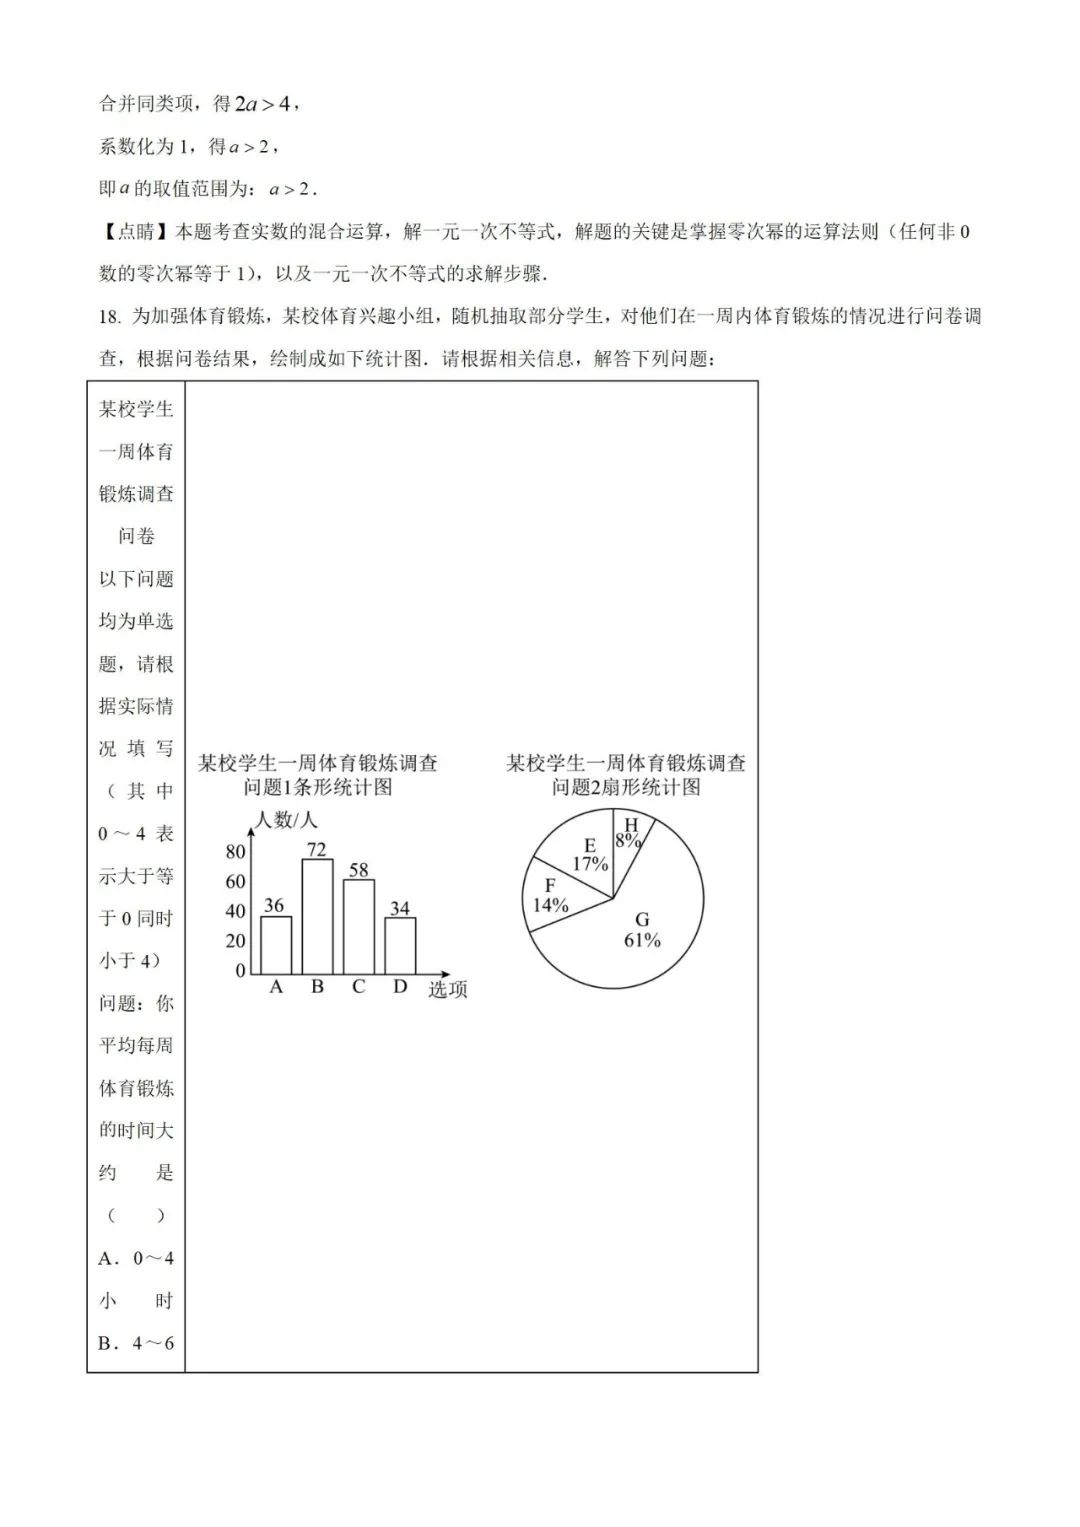 【中考真题】2023年贵州省中考数学真题 (带答案解析) 第19张